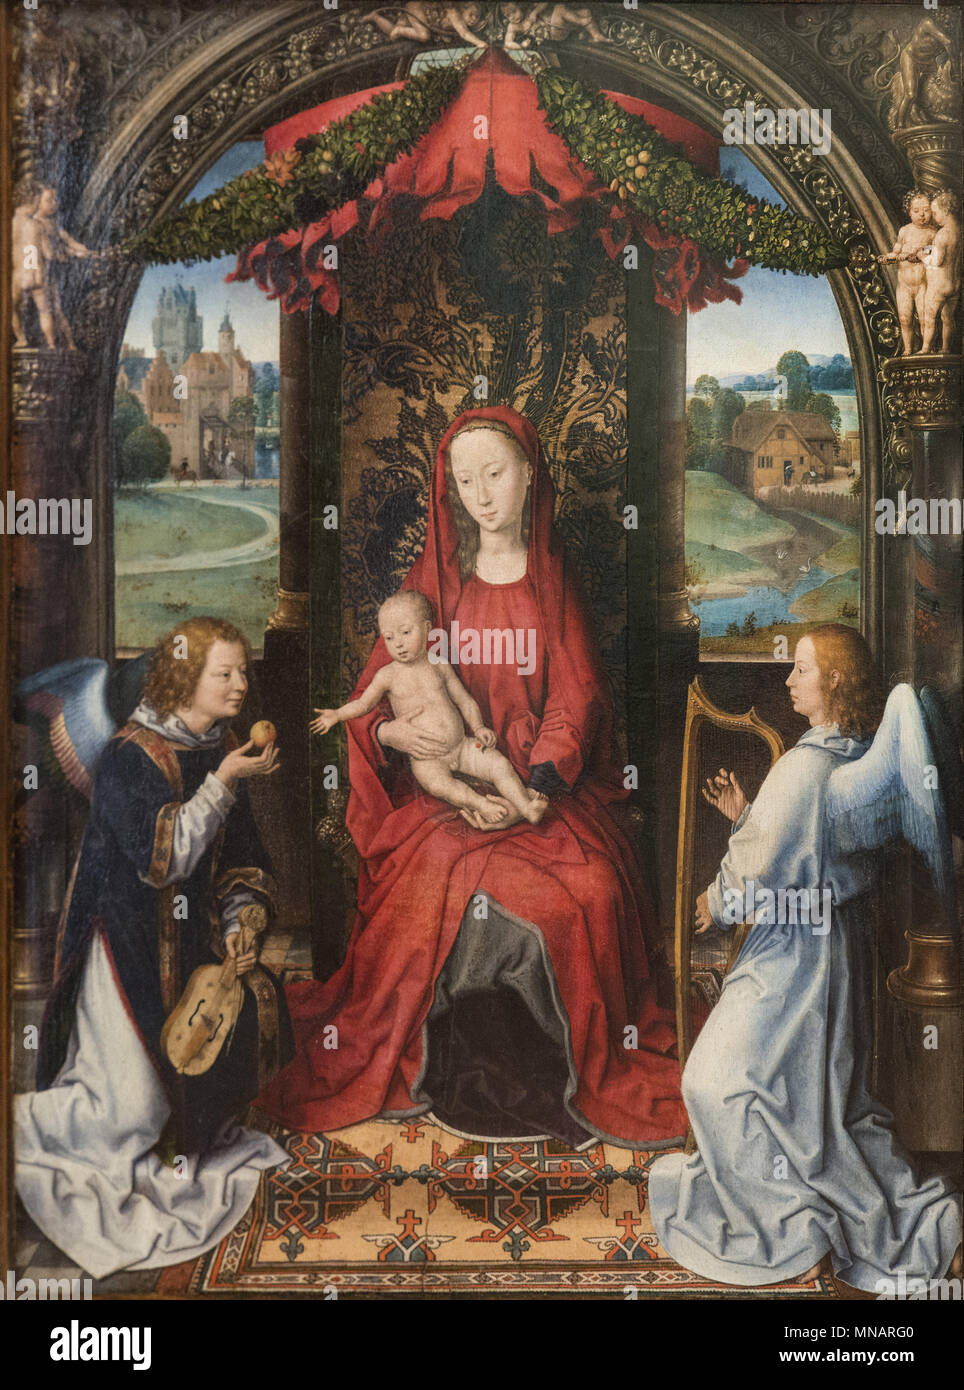 Hans Memling - Madona y el niño en el trono con ángeles - C. 1480 - La Galería de los Uffizi - Galleria degli Uffizi Foto de stock